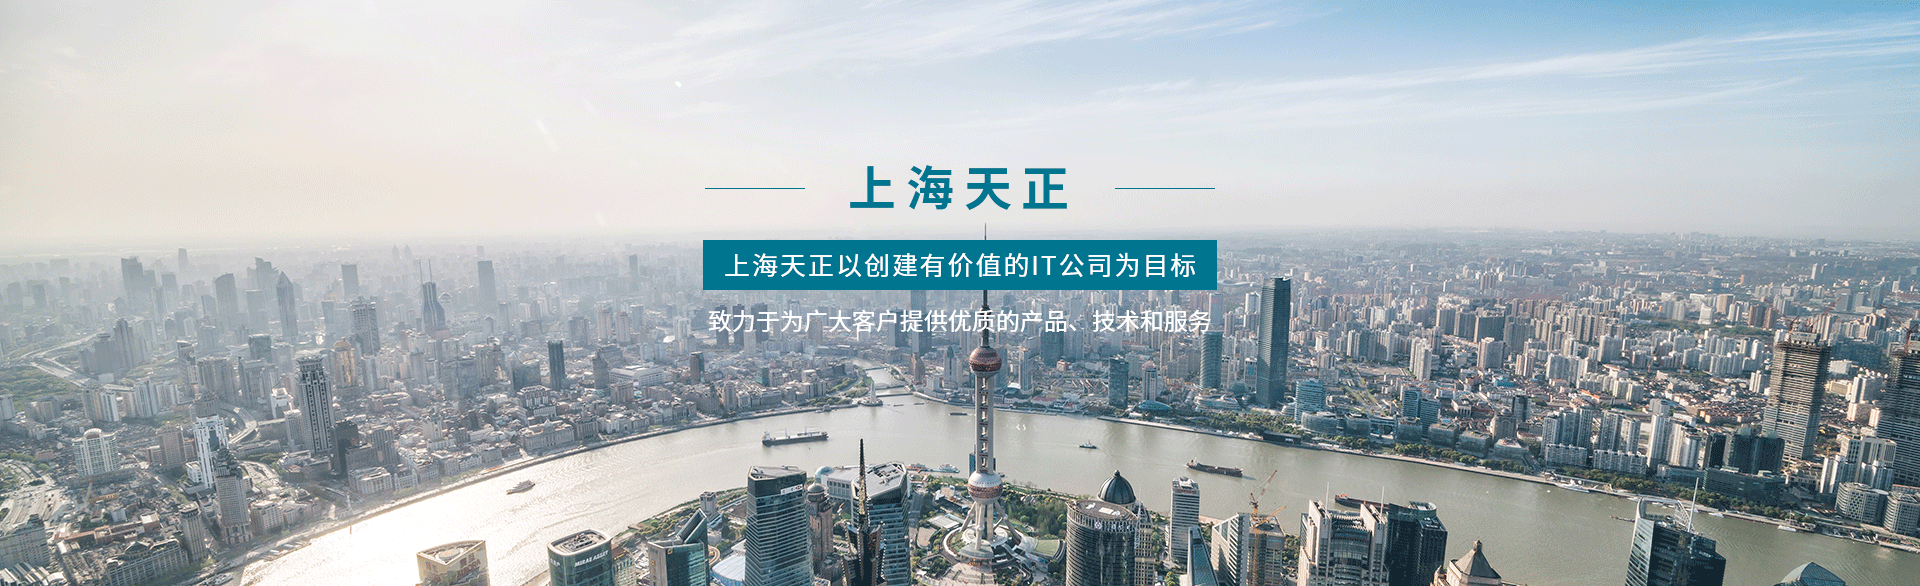 上海易寶軟件有限公司南京分公司